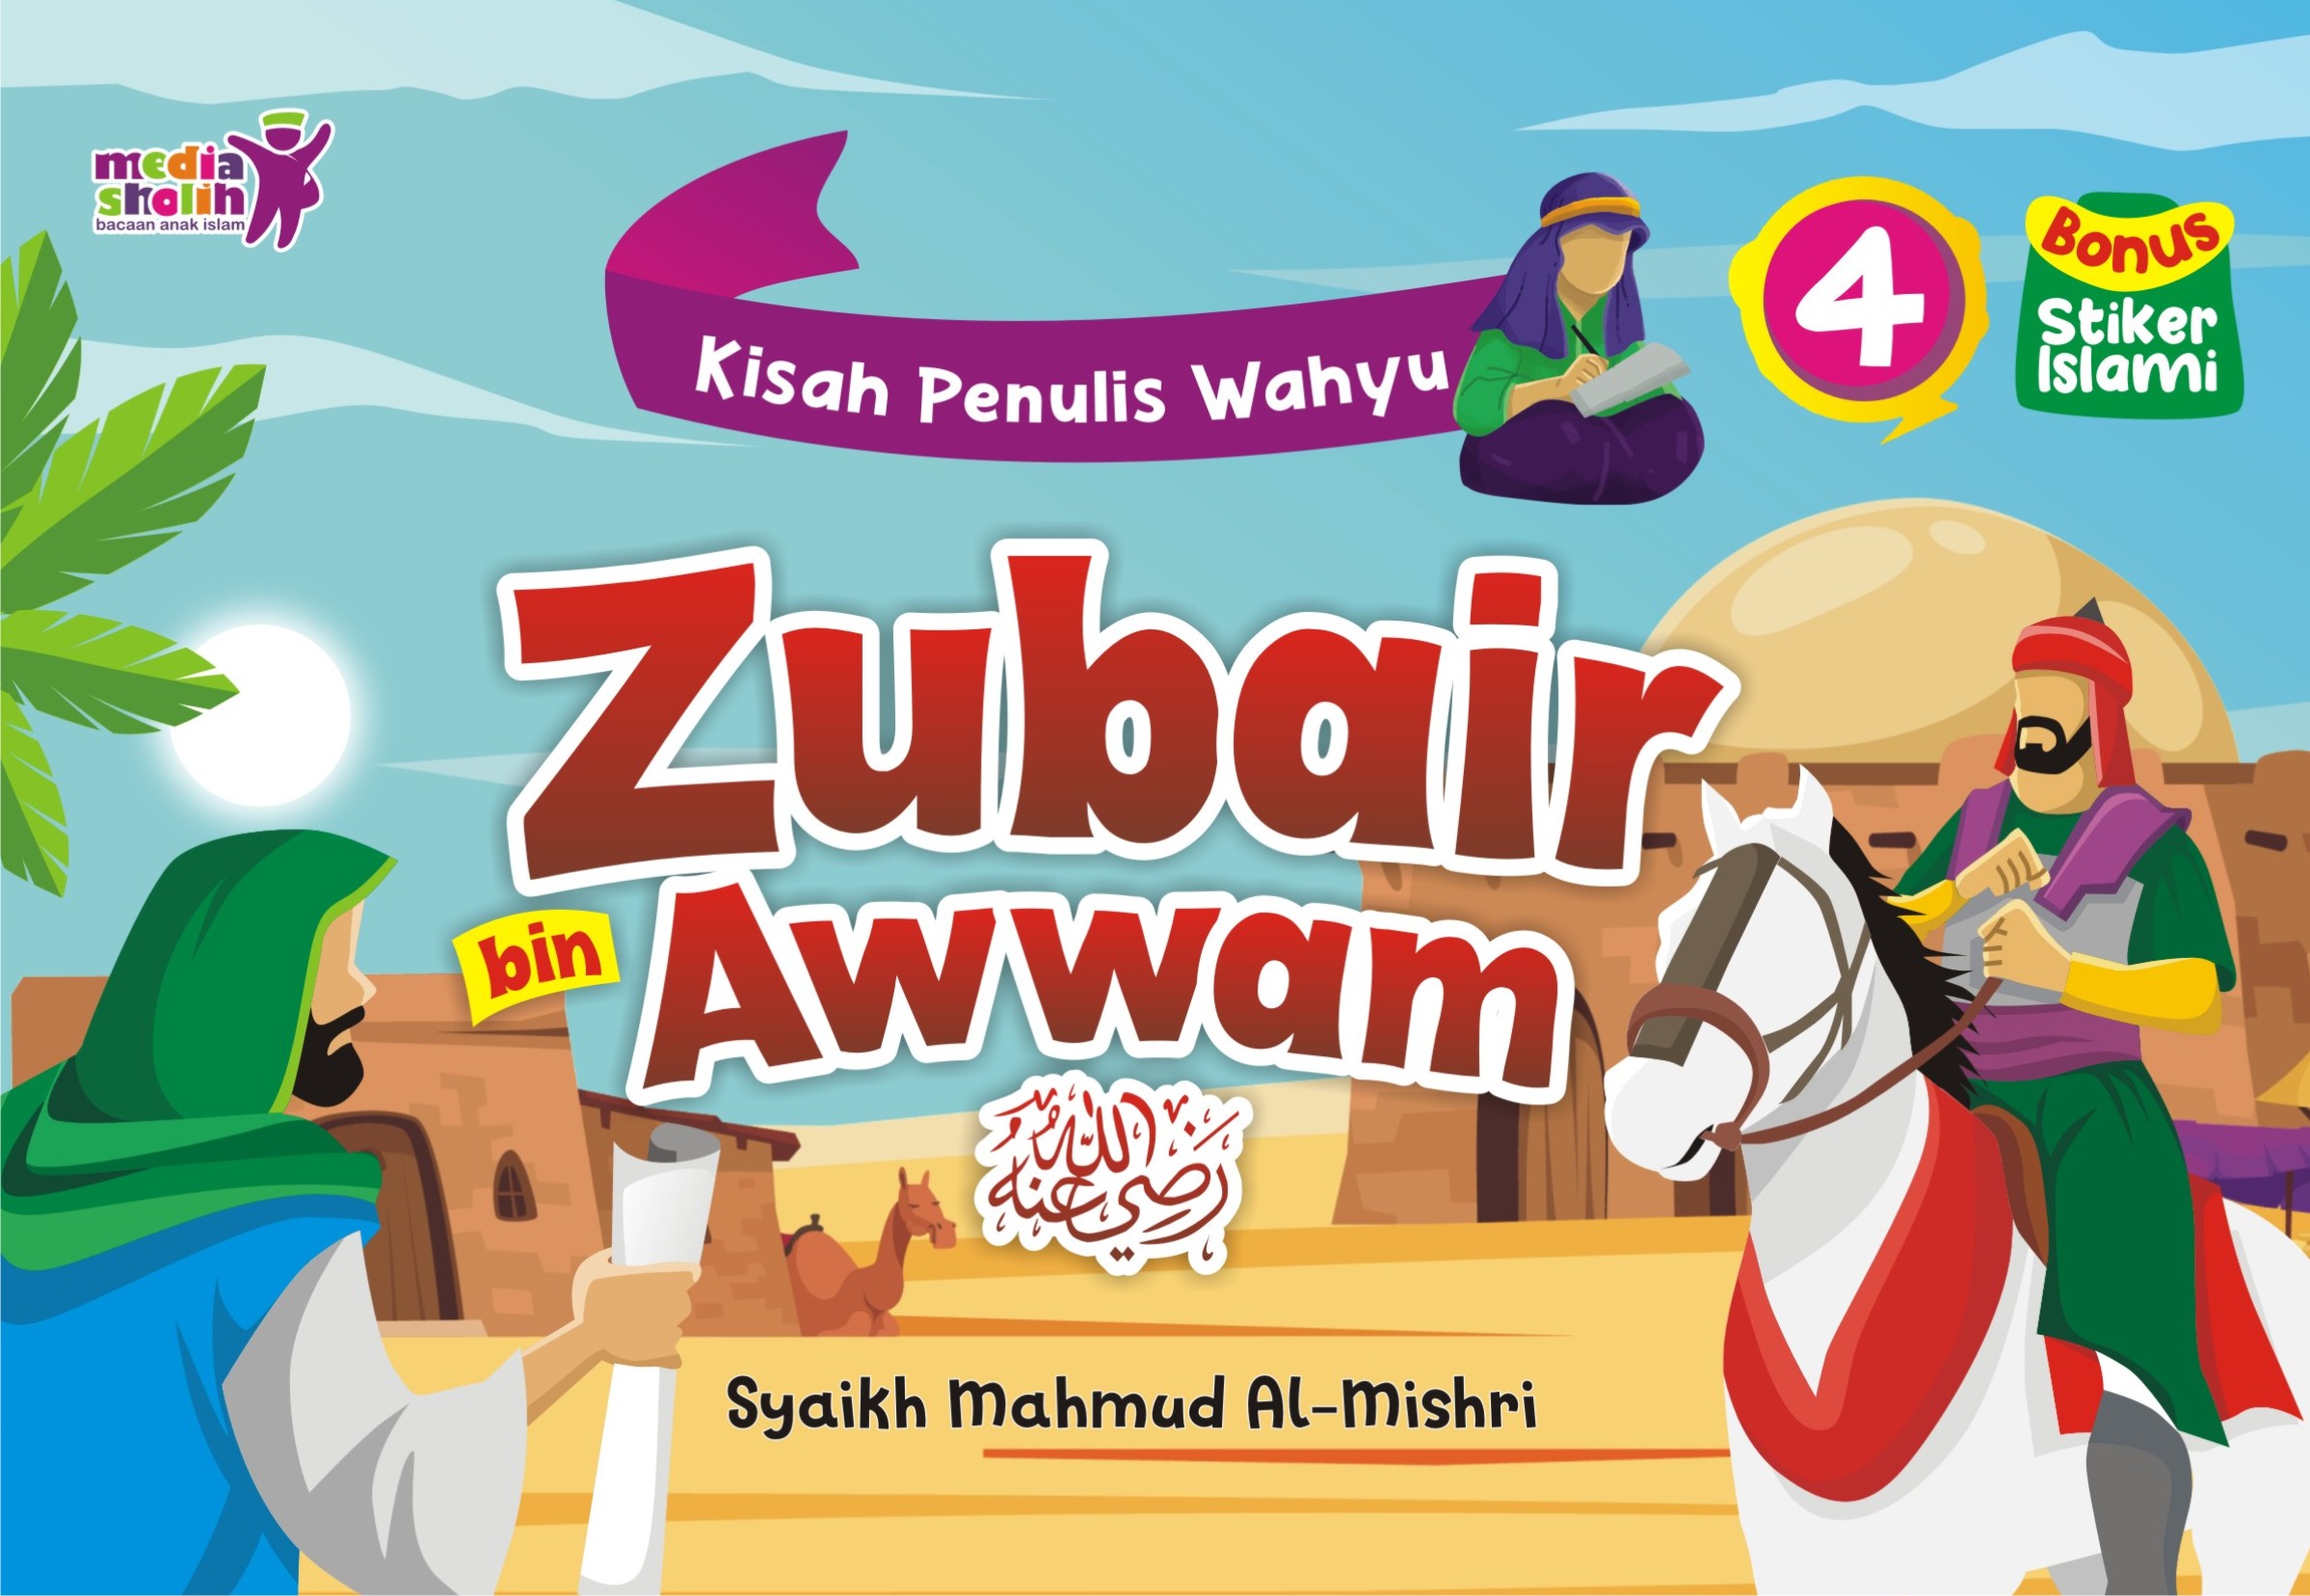 Kisah Penulis Wahyu (4): Zubair bin Awwam